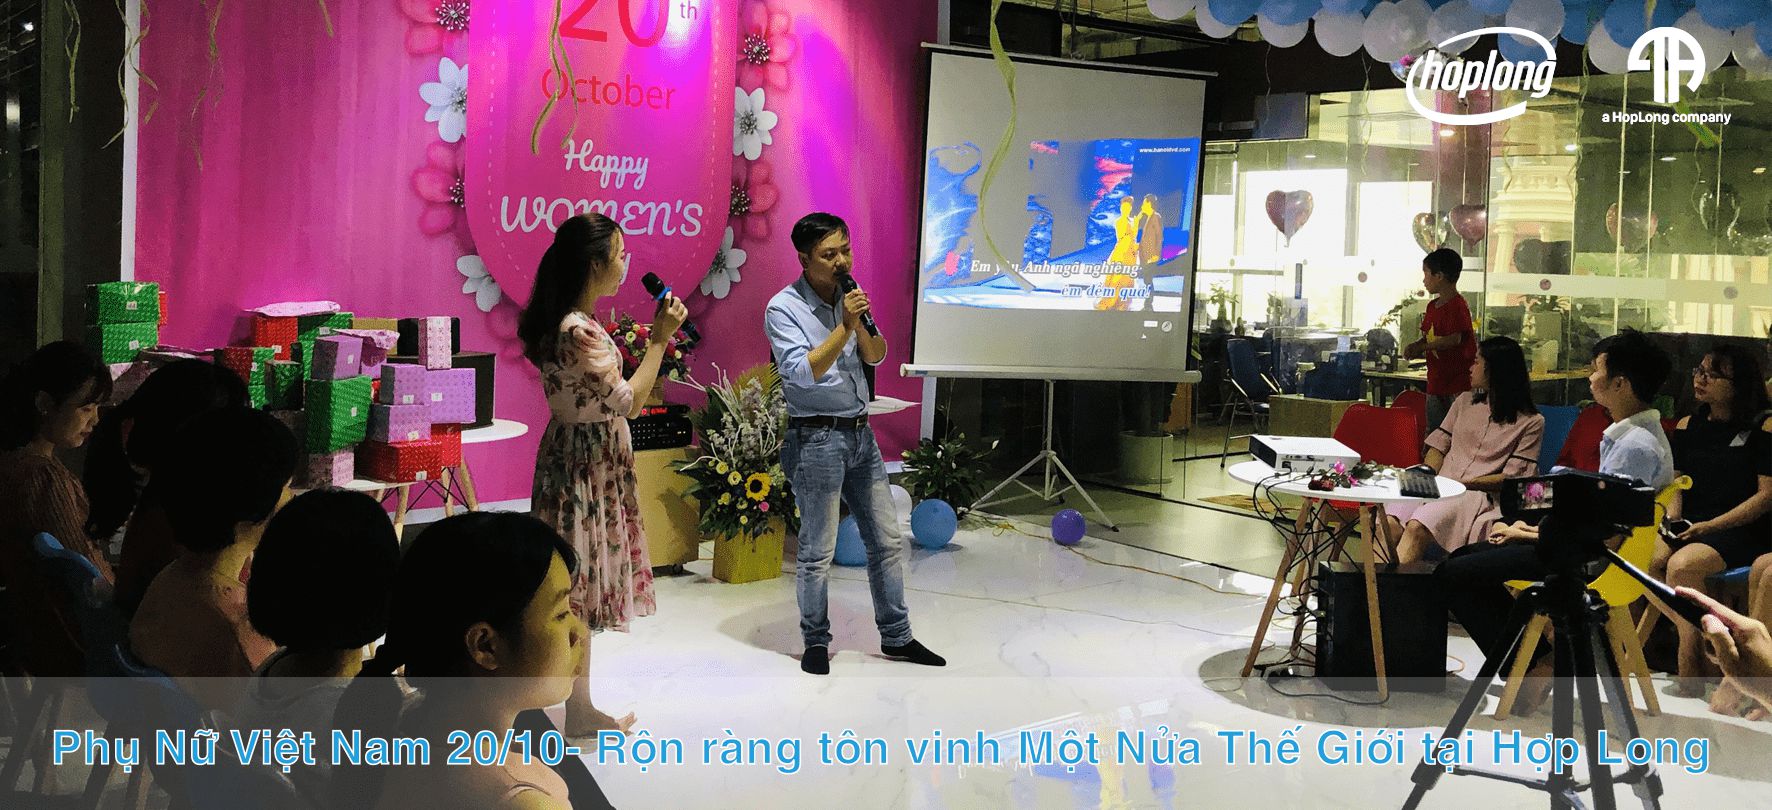 Phụ Nữ Việt Nam 20/10- Rộn ràng tôn vinh Một Nửa Thế Giới tại Hợp Long